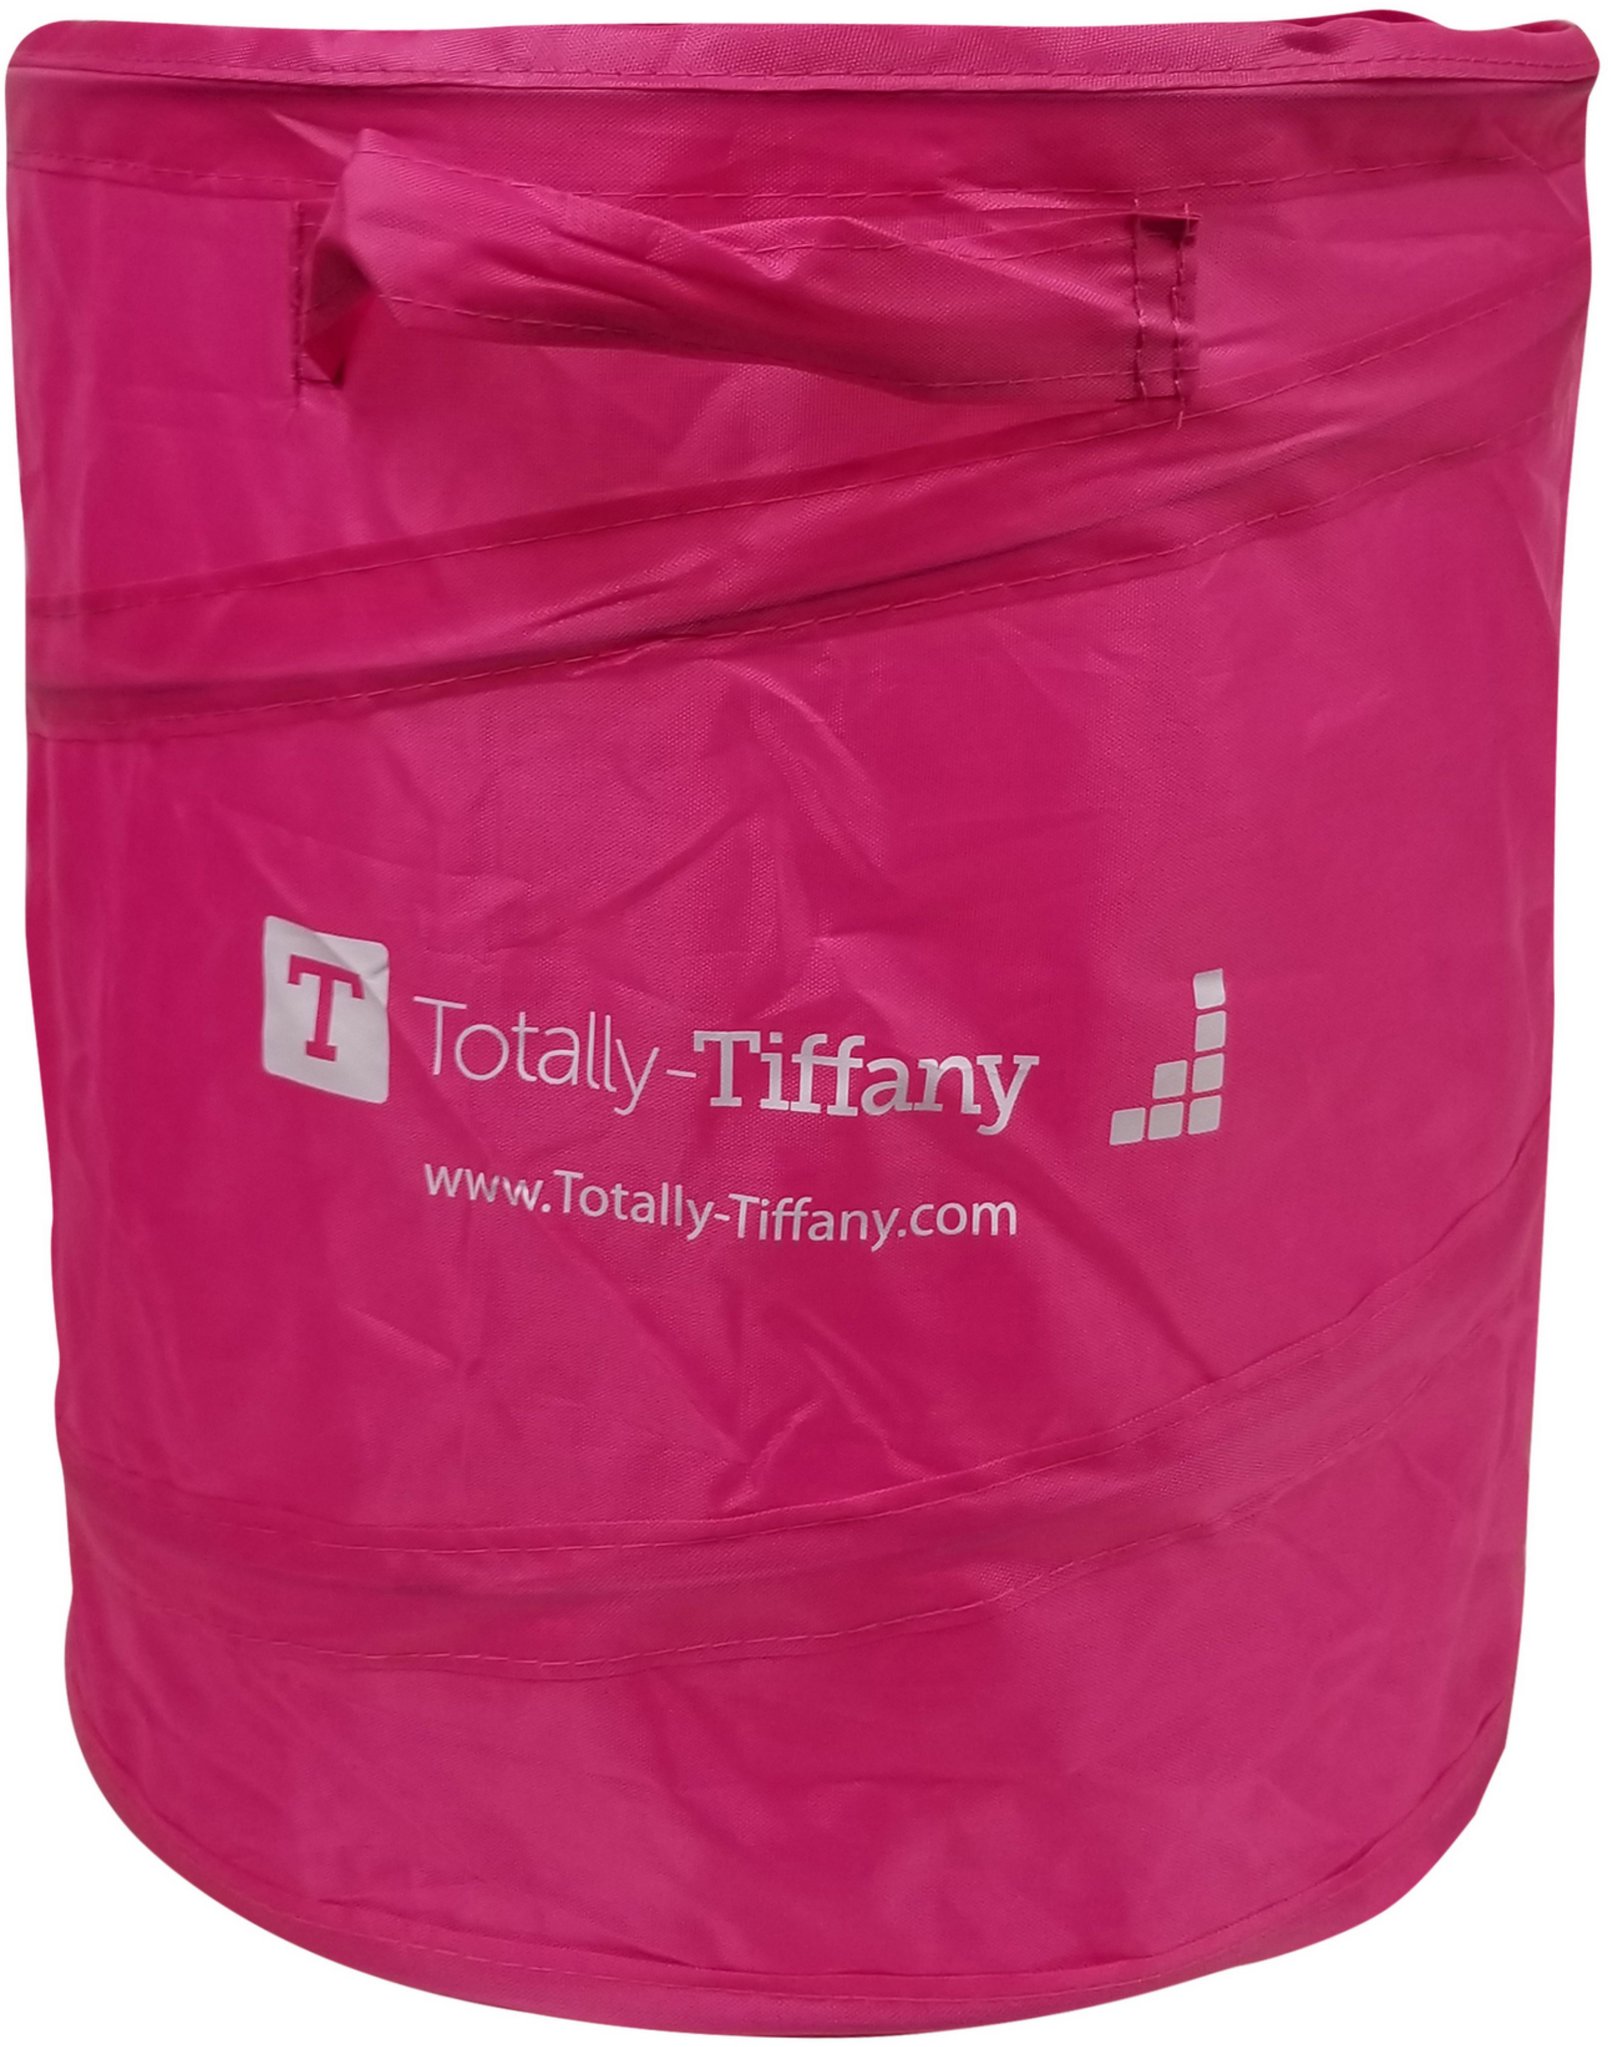 Bild von Totally-Tiffany Pop-Up Waste Paper Can-Pink